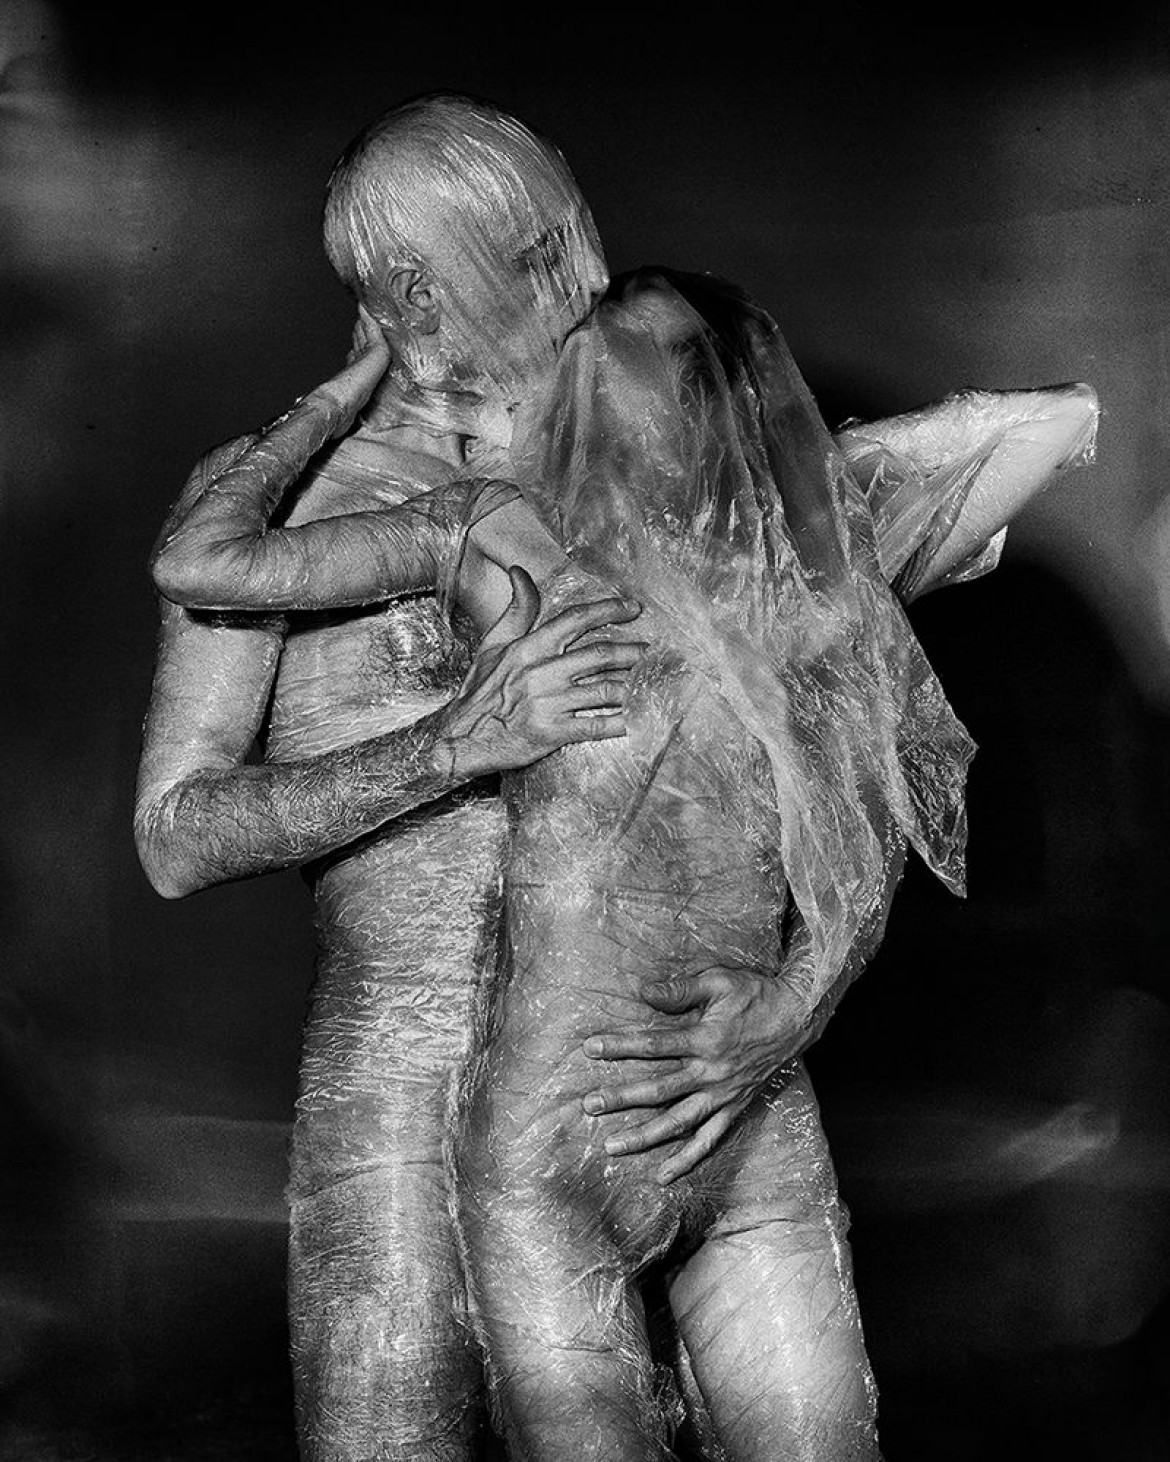 fot. Rafał Michalak, z cyklu "Love Impossible", 3. miejsce w kategorii Fine Art / Nudes